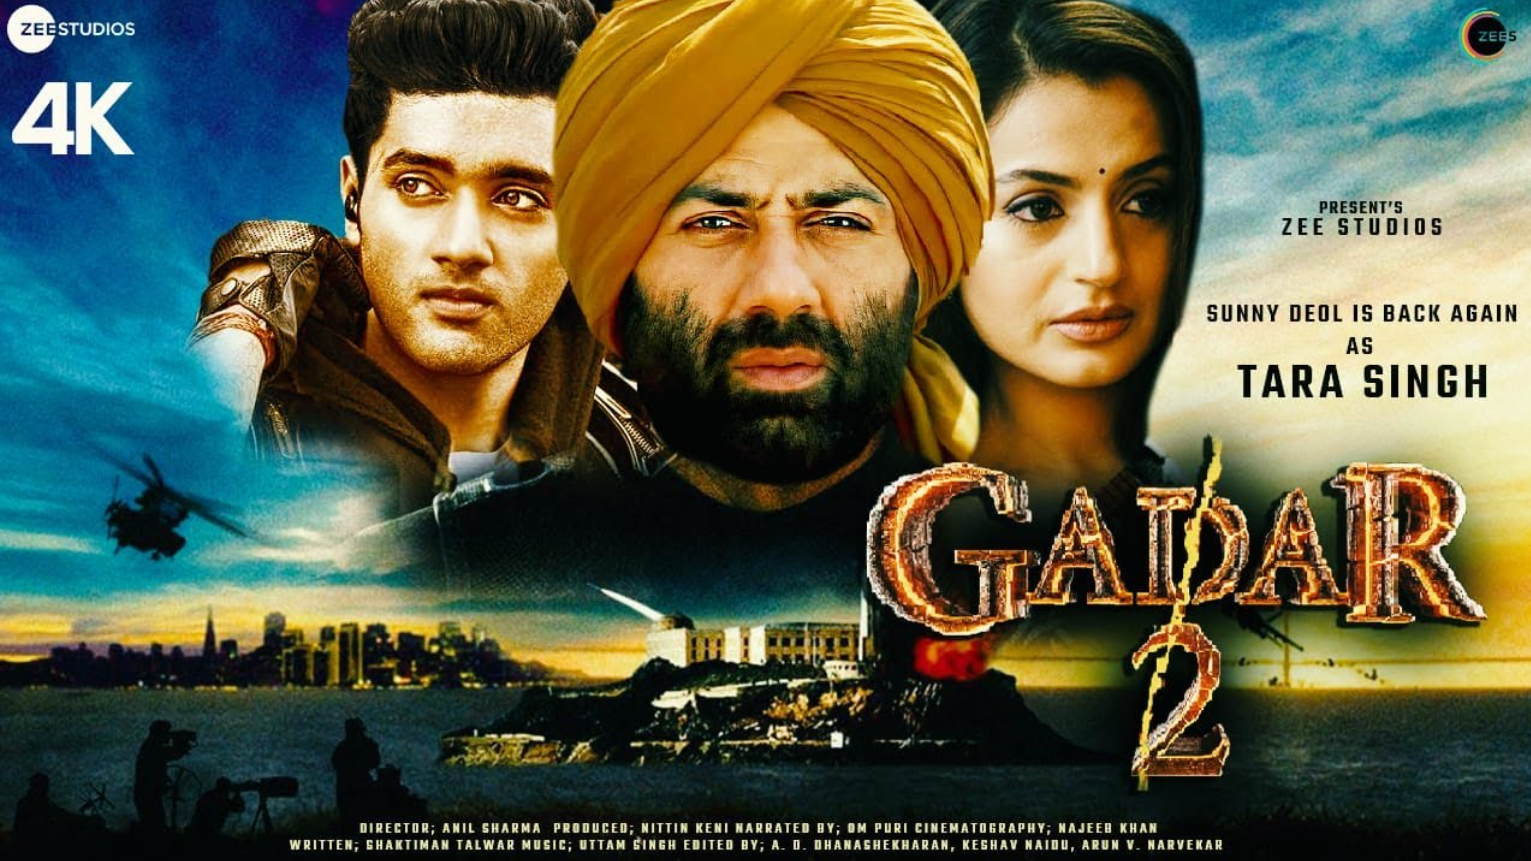 Gadar 2 Review